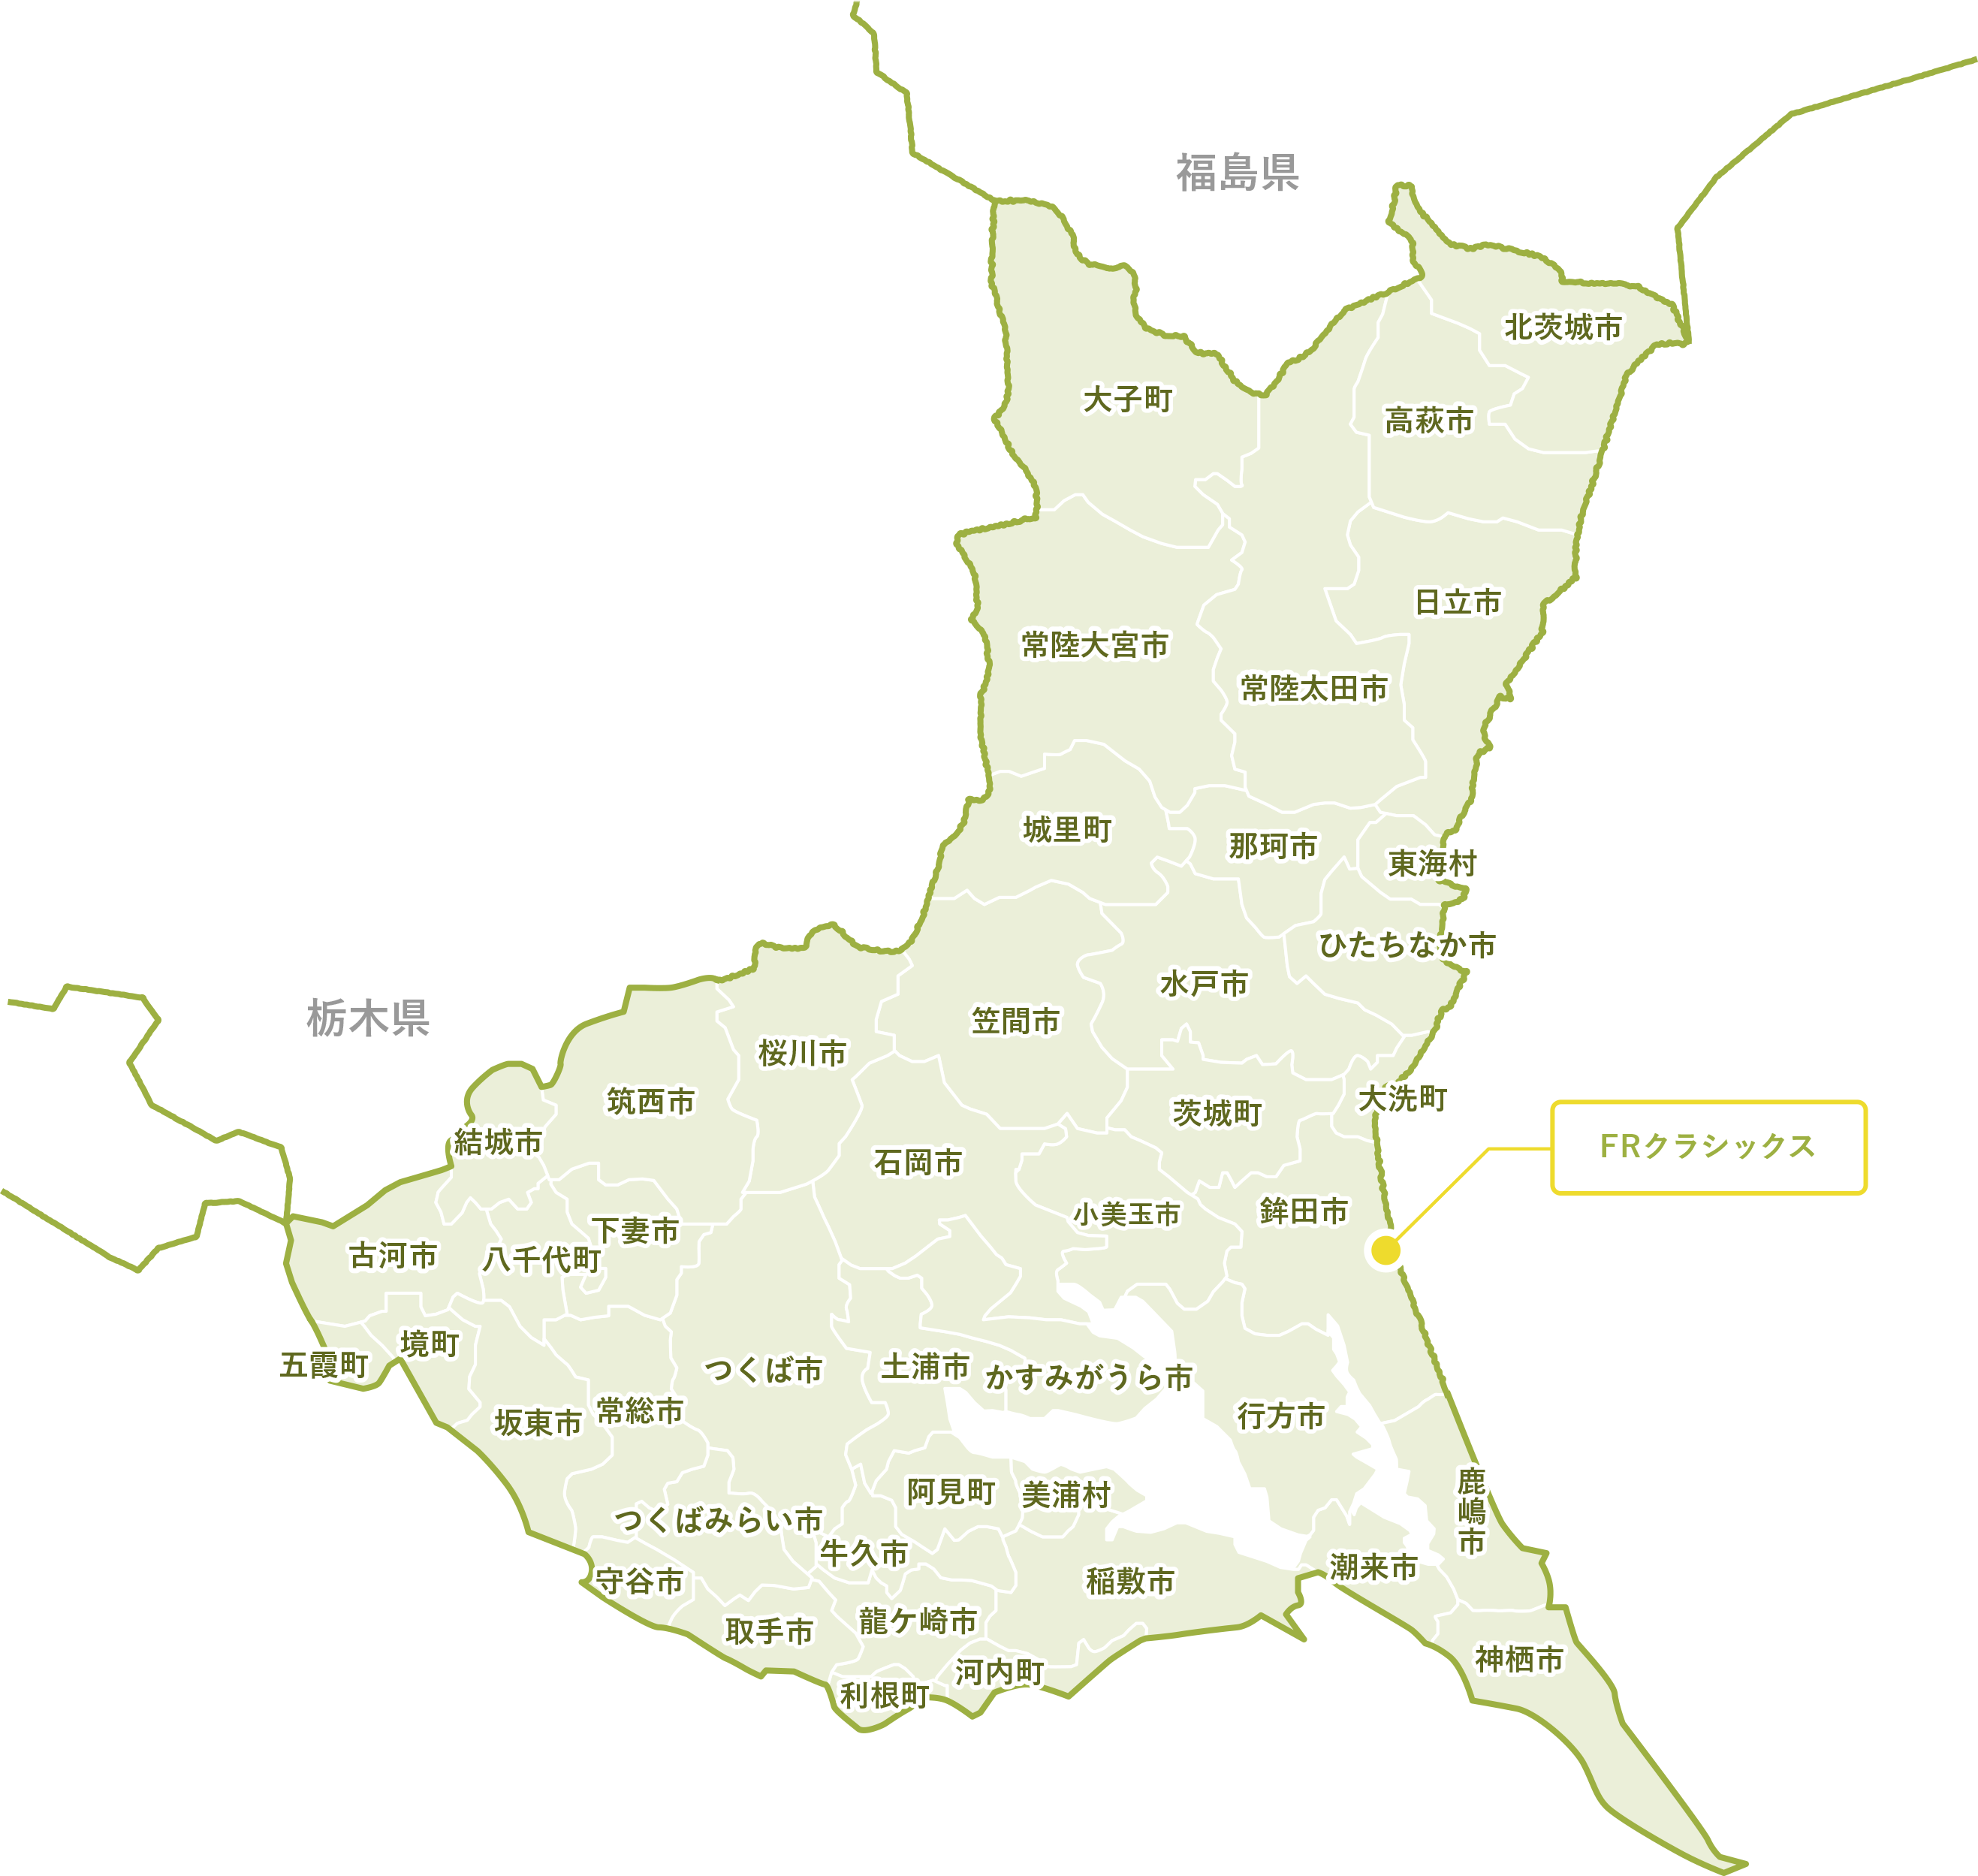 茨城県対応地域の地図